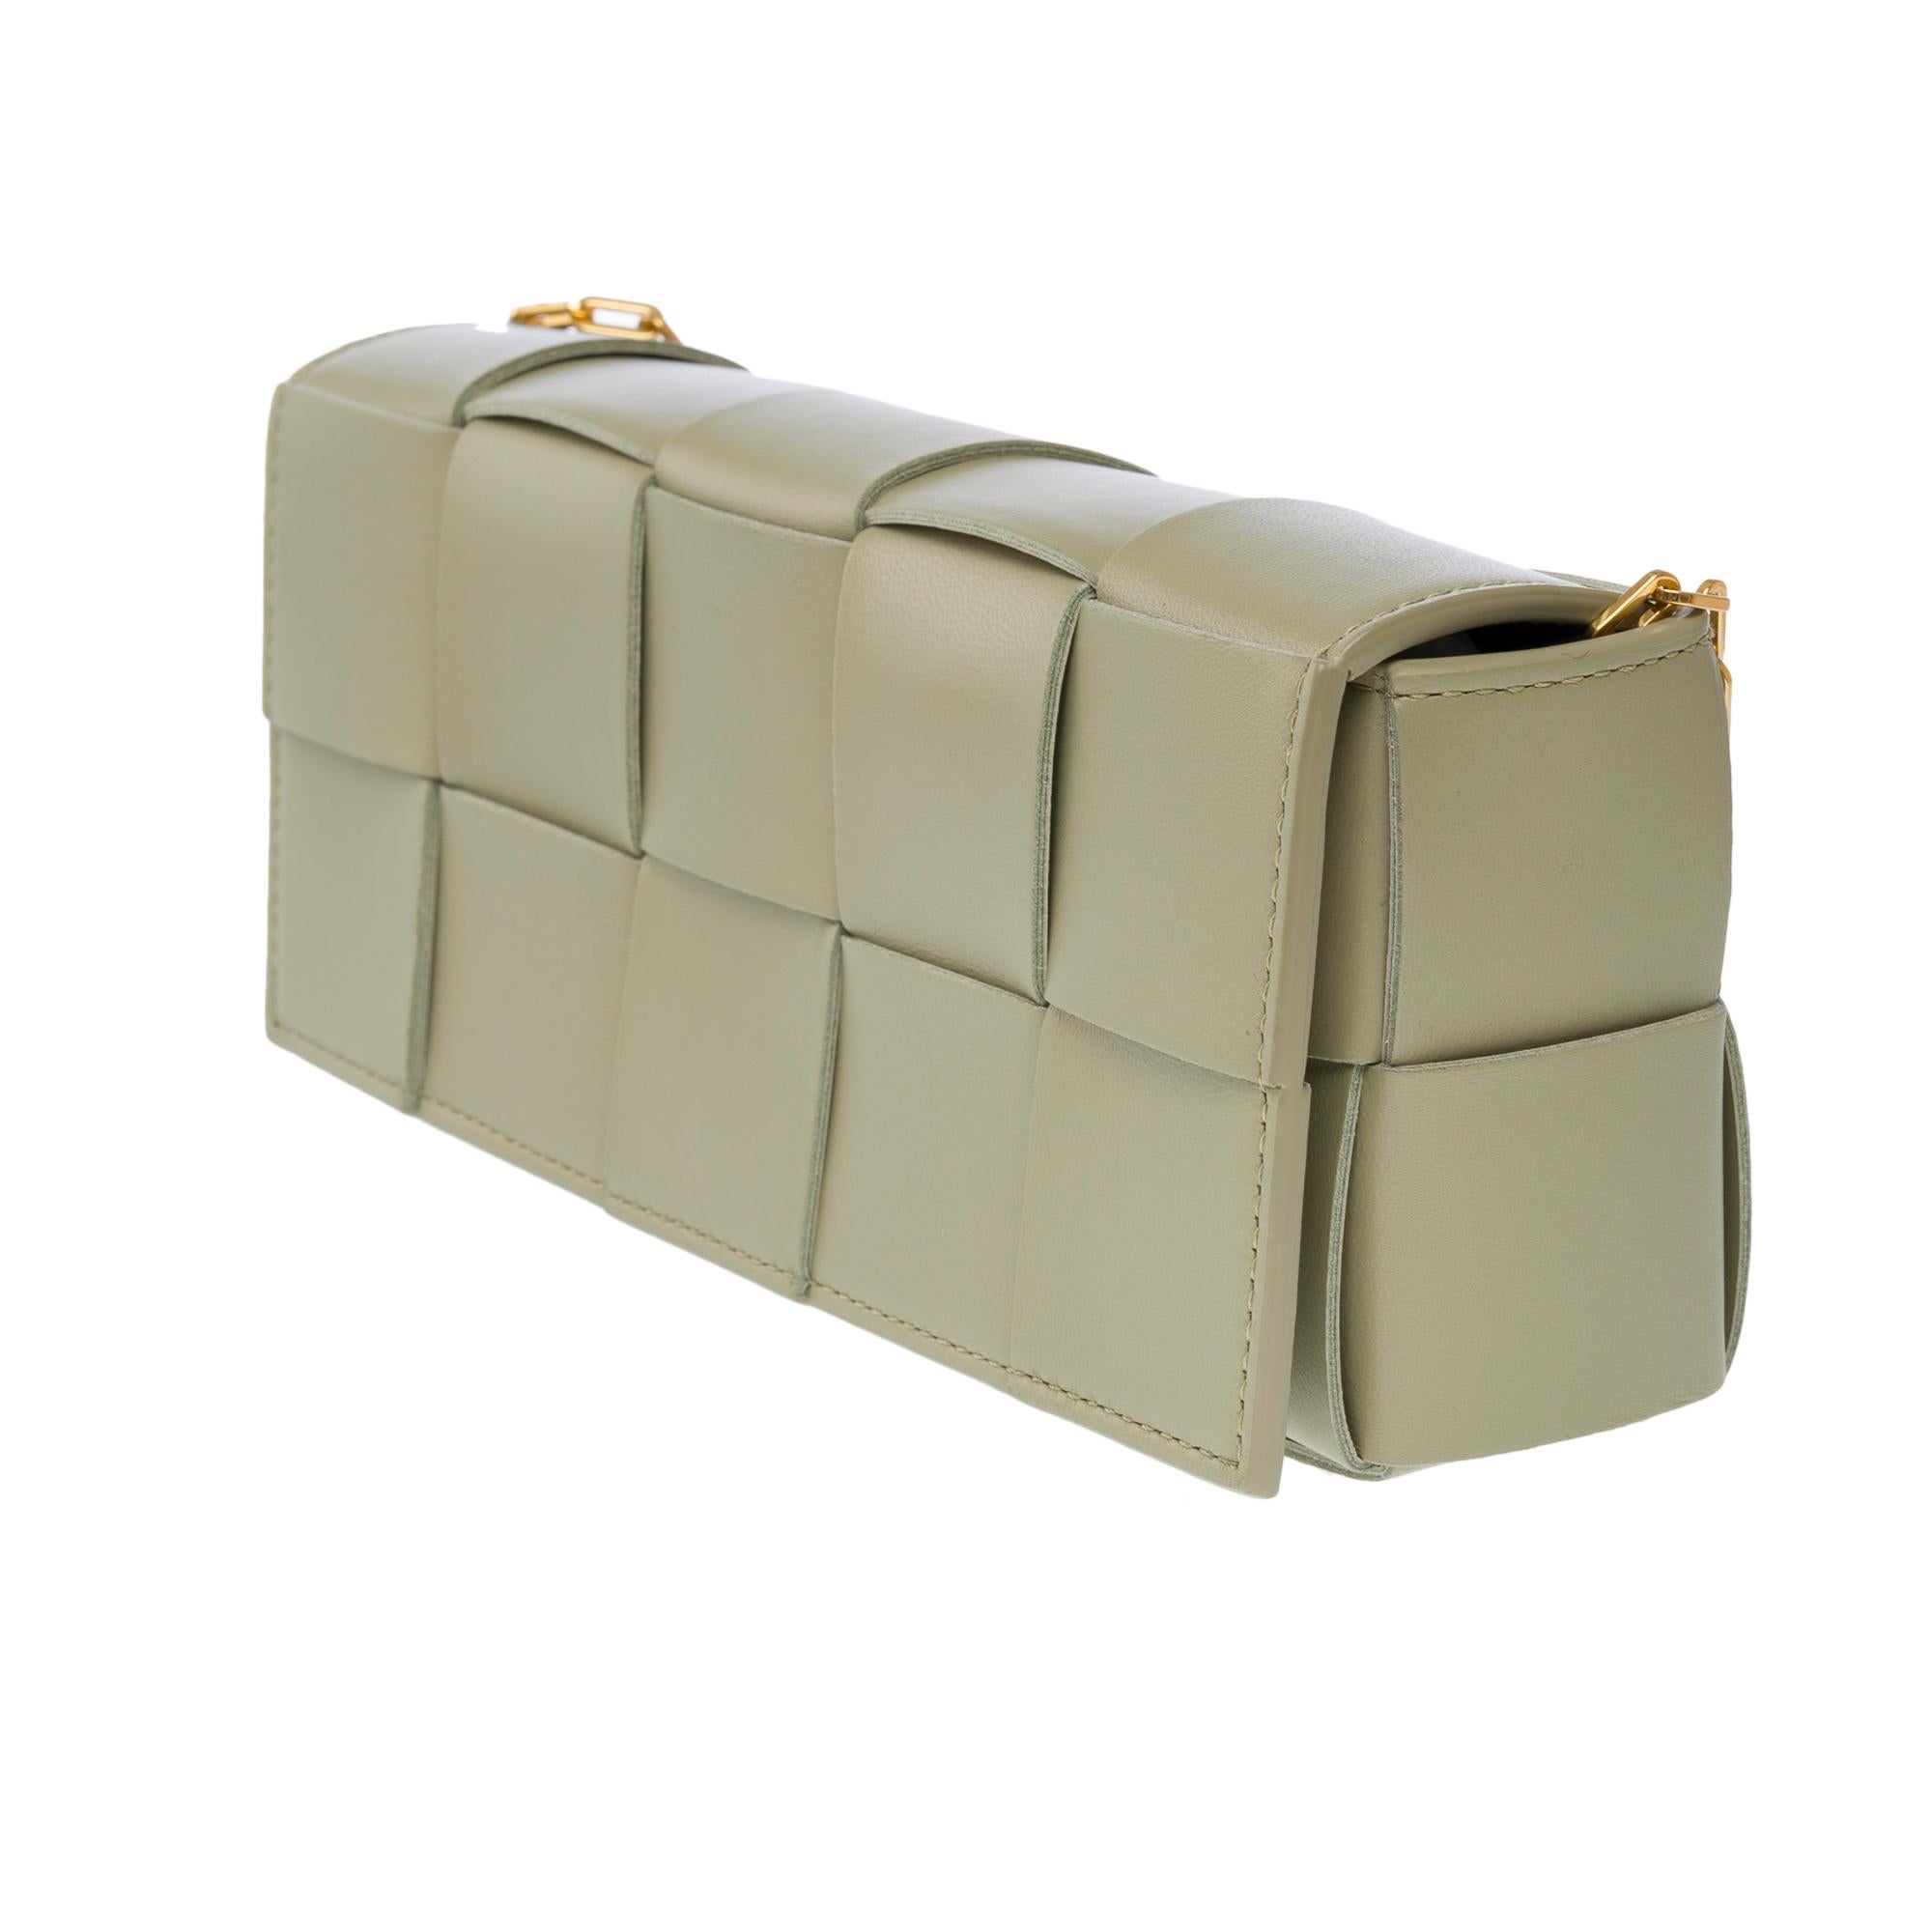 Bottega Veneta Cassette 23 shoulder bag in green lambskin leather, GHW For Sale 2